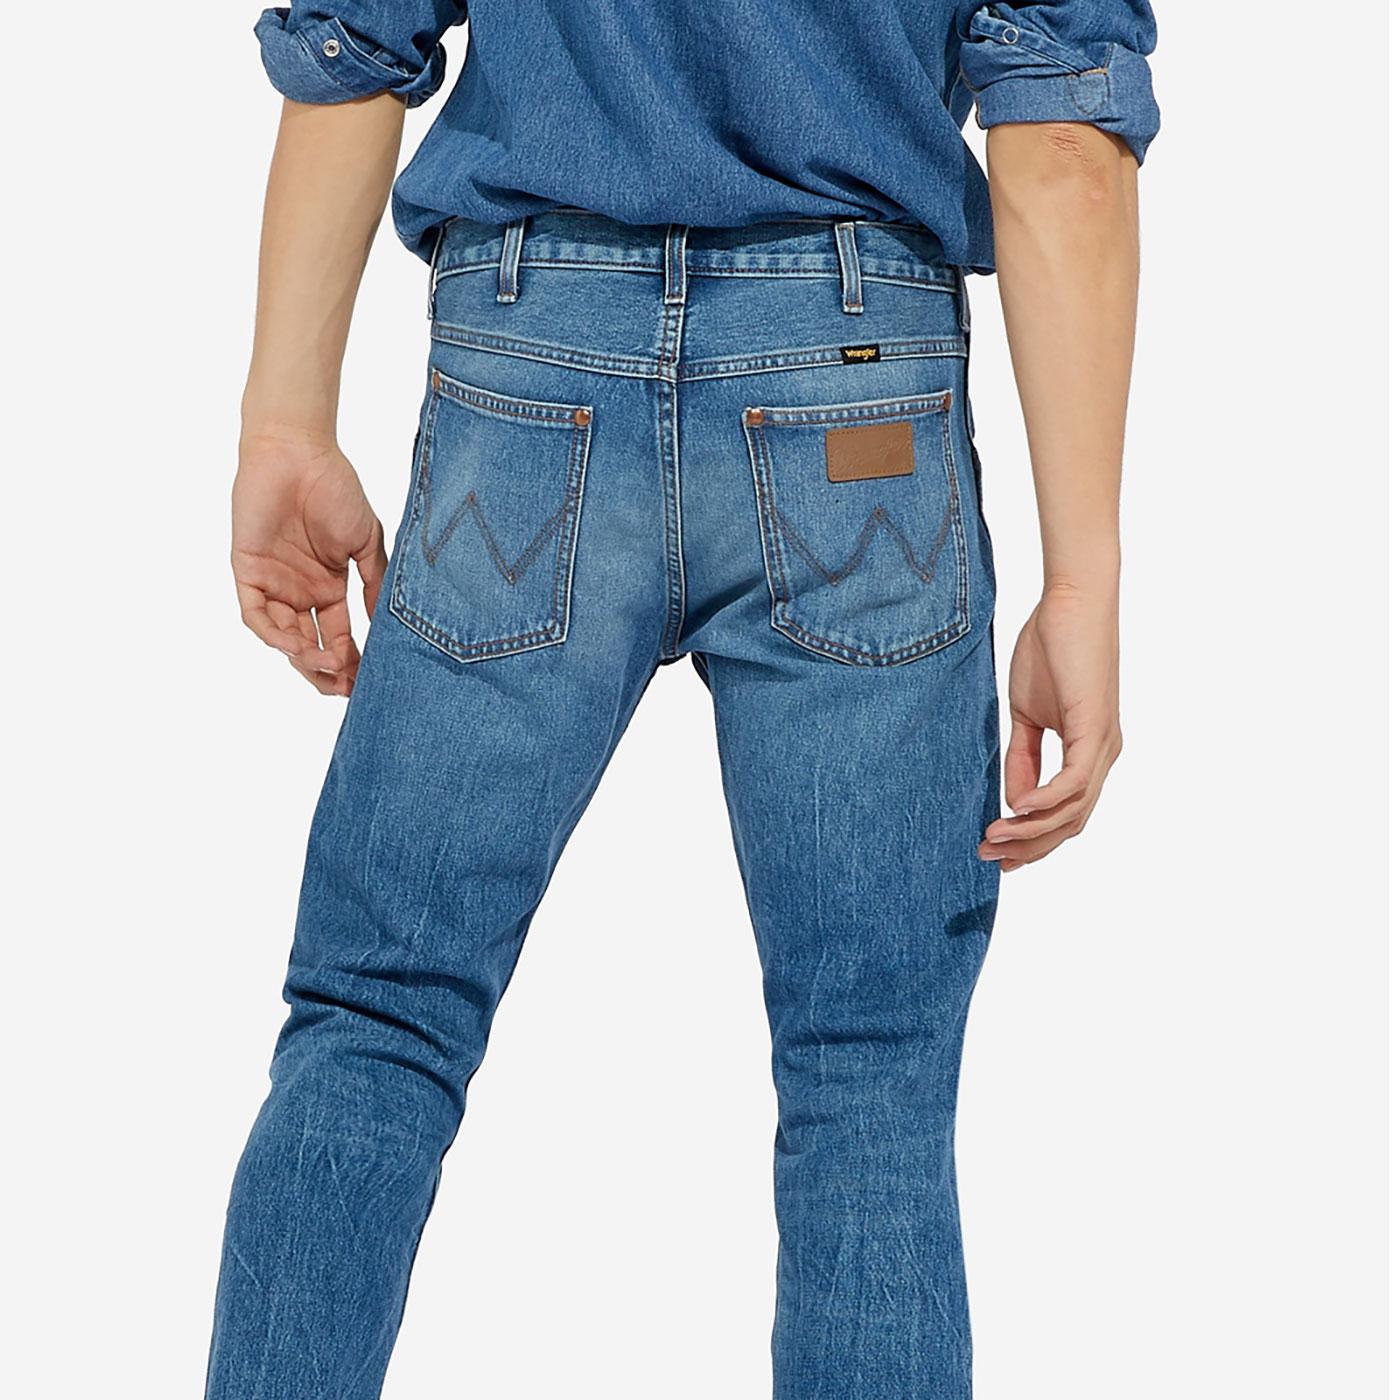 wrangler 11mwz jeans